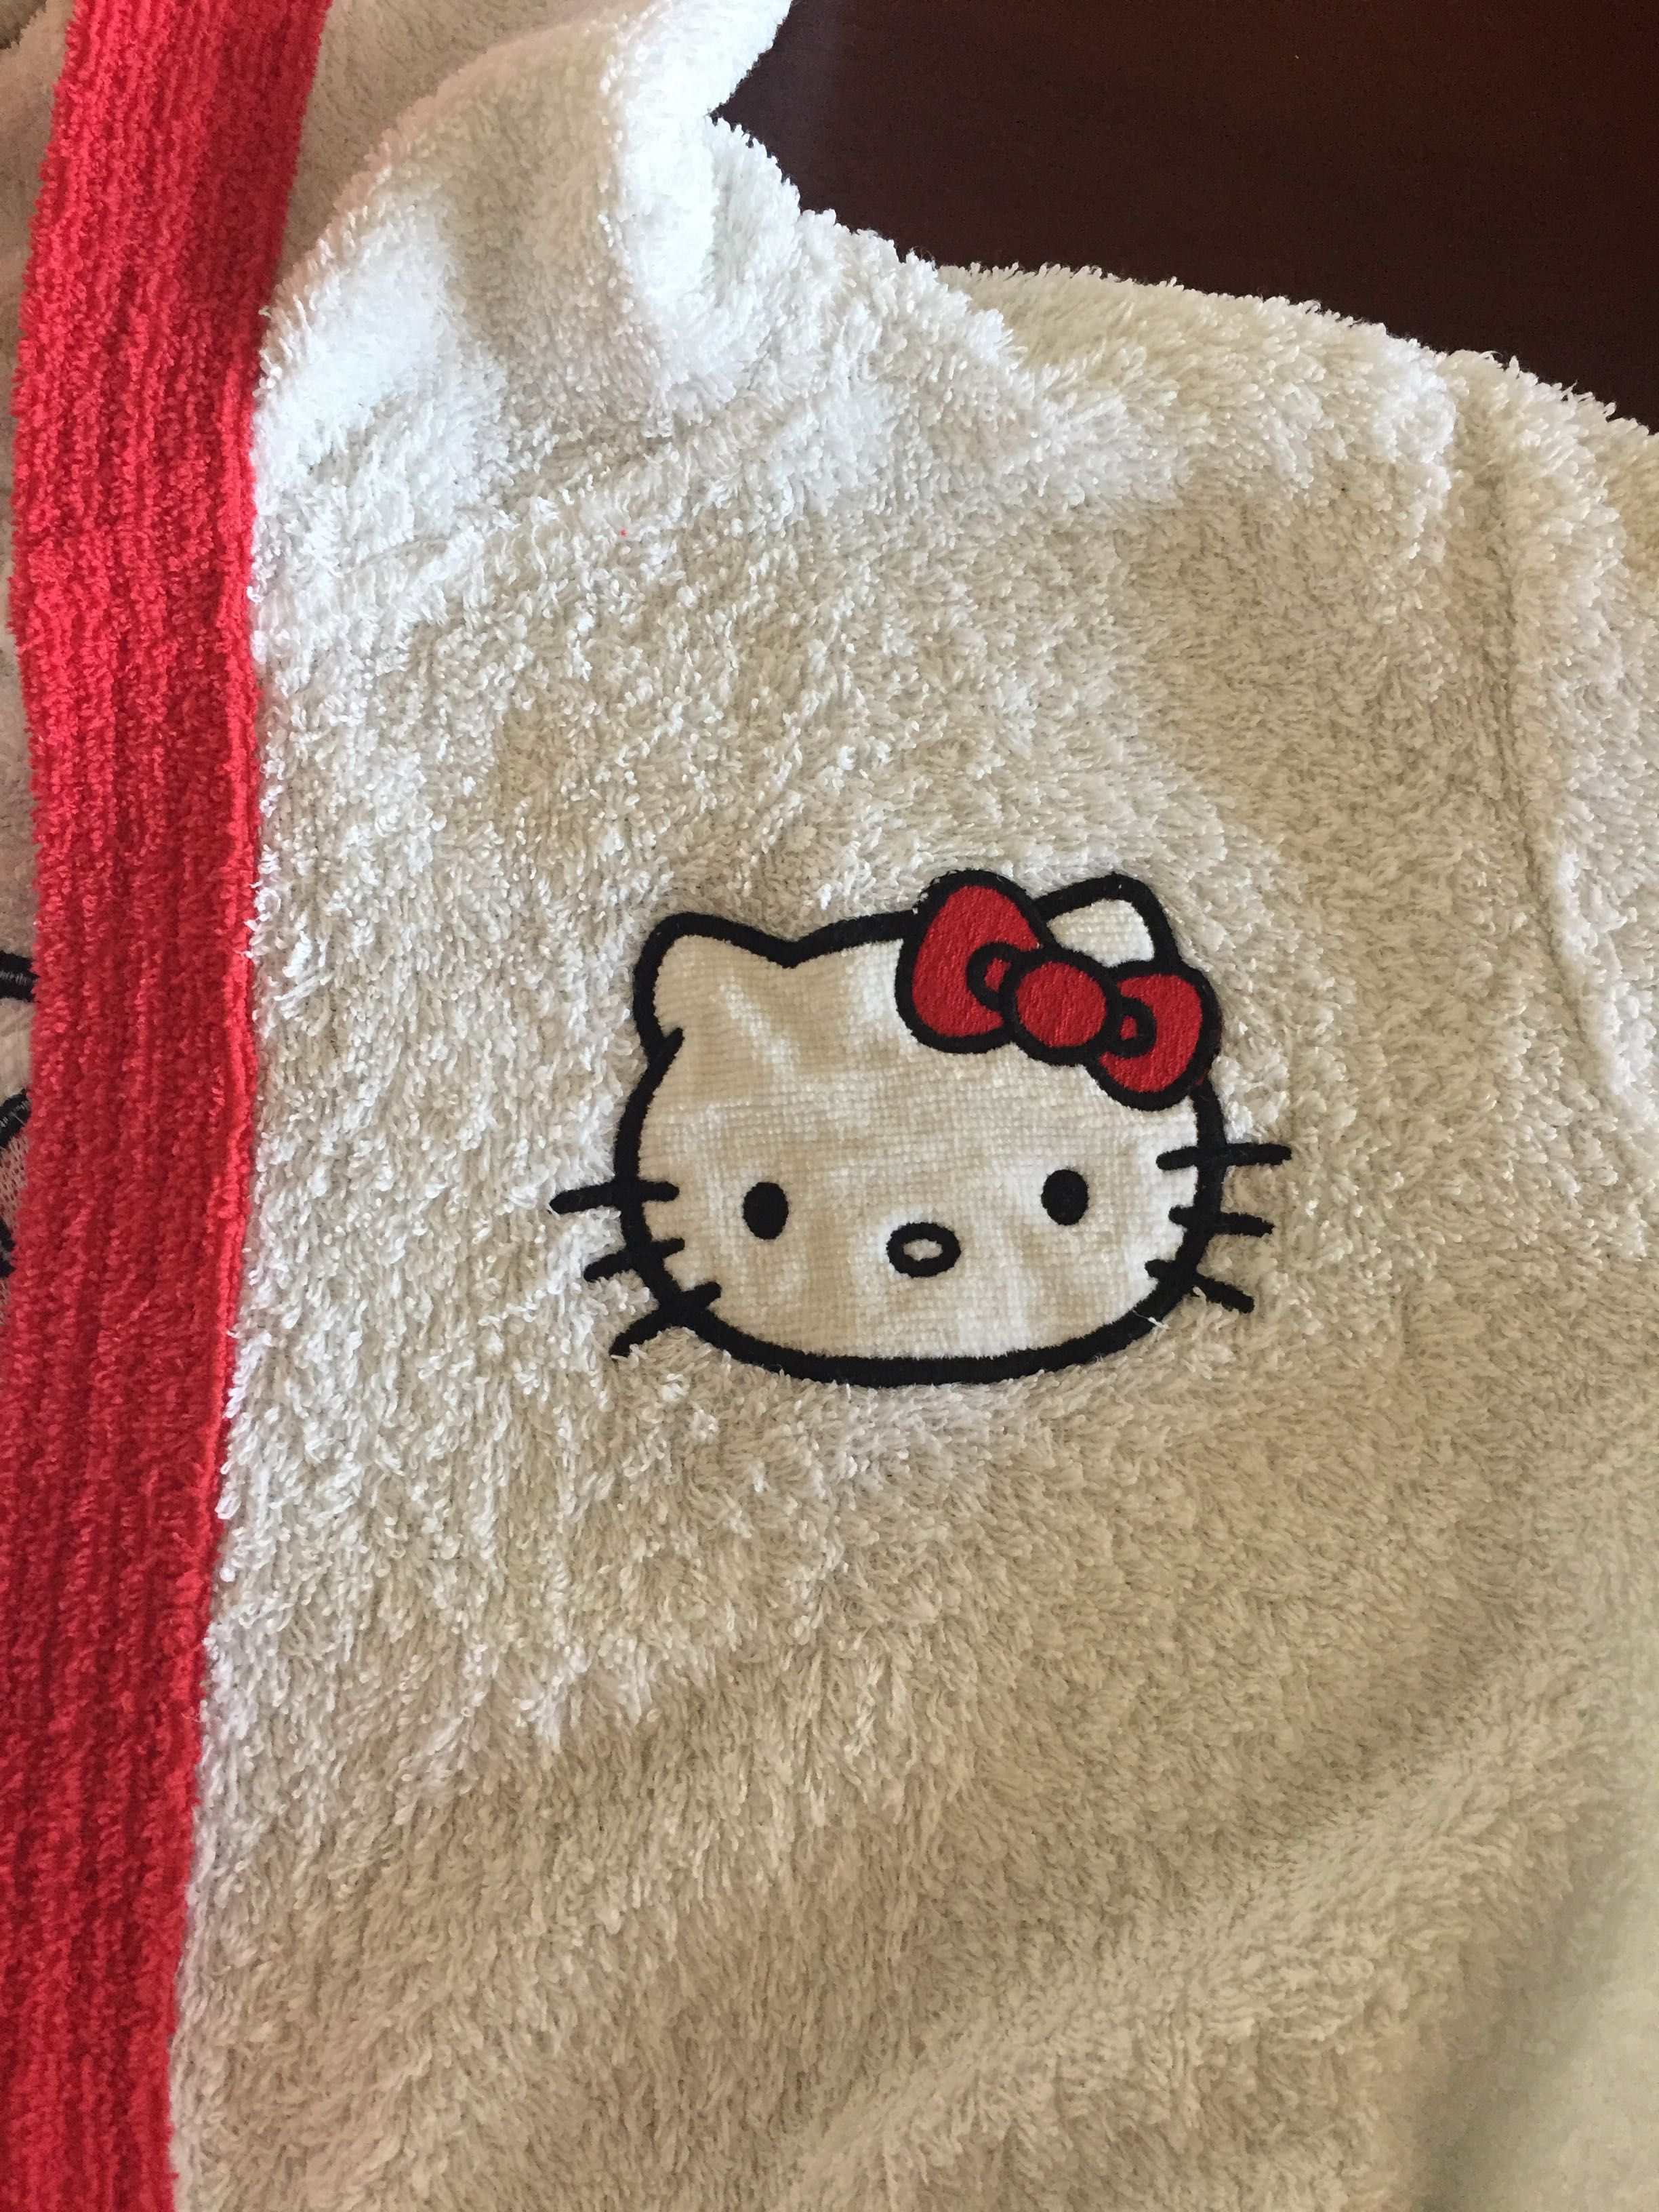 Robe Hello Kitty tamanho 6 anos branco